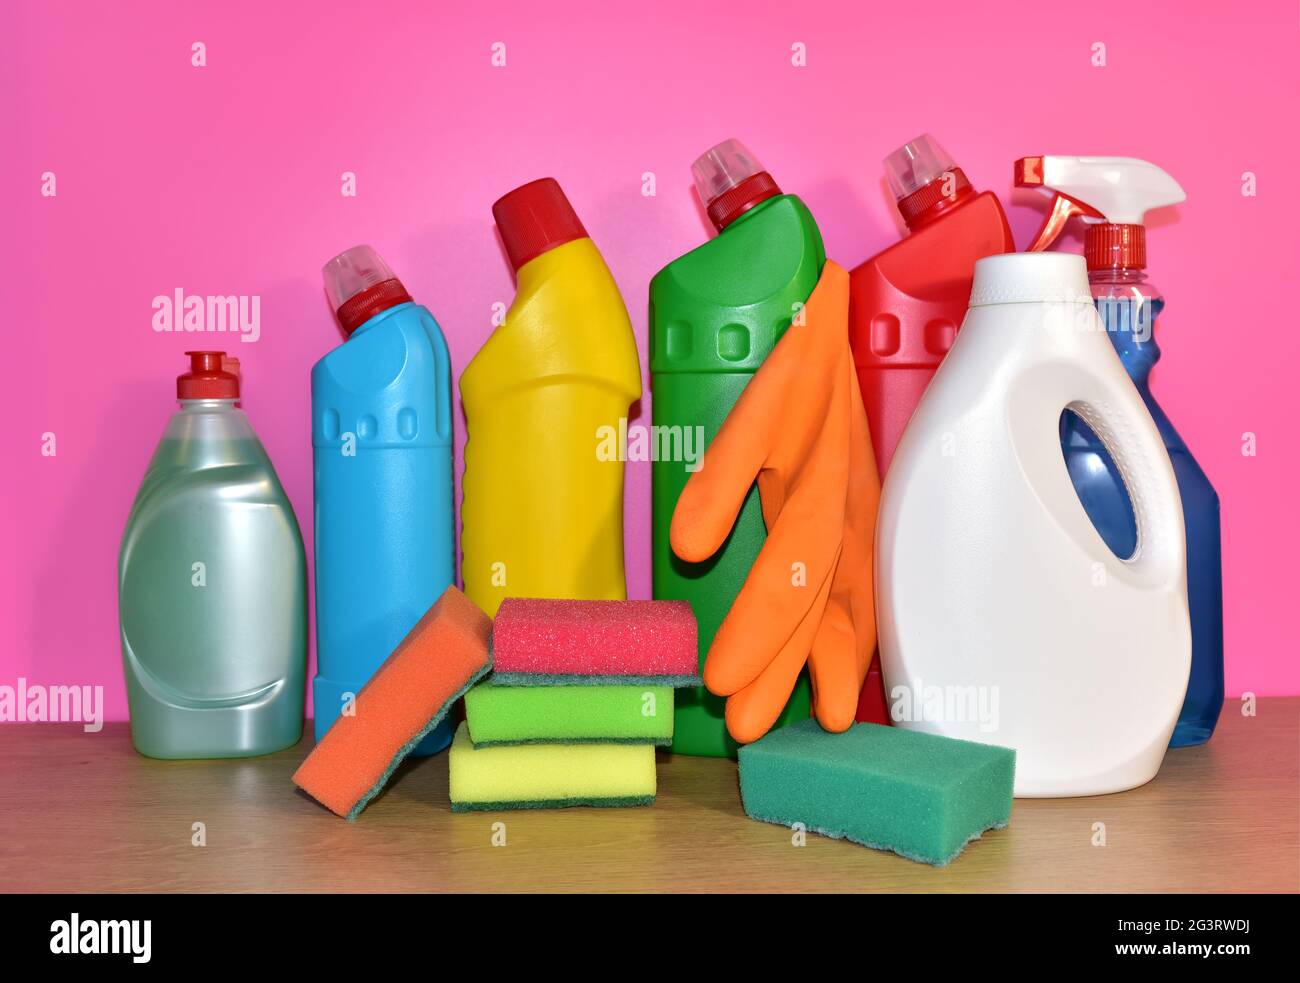 Botellas de detergente y esponja para lavar sobre fondo rosa